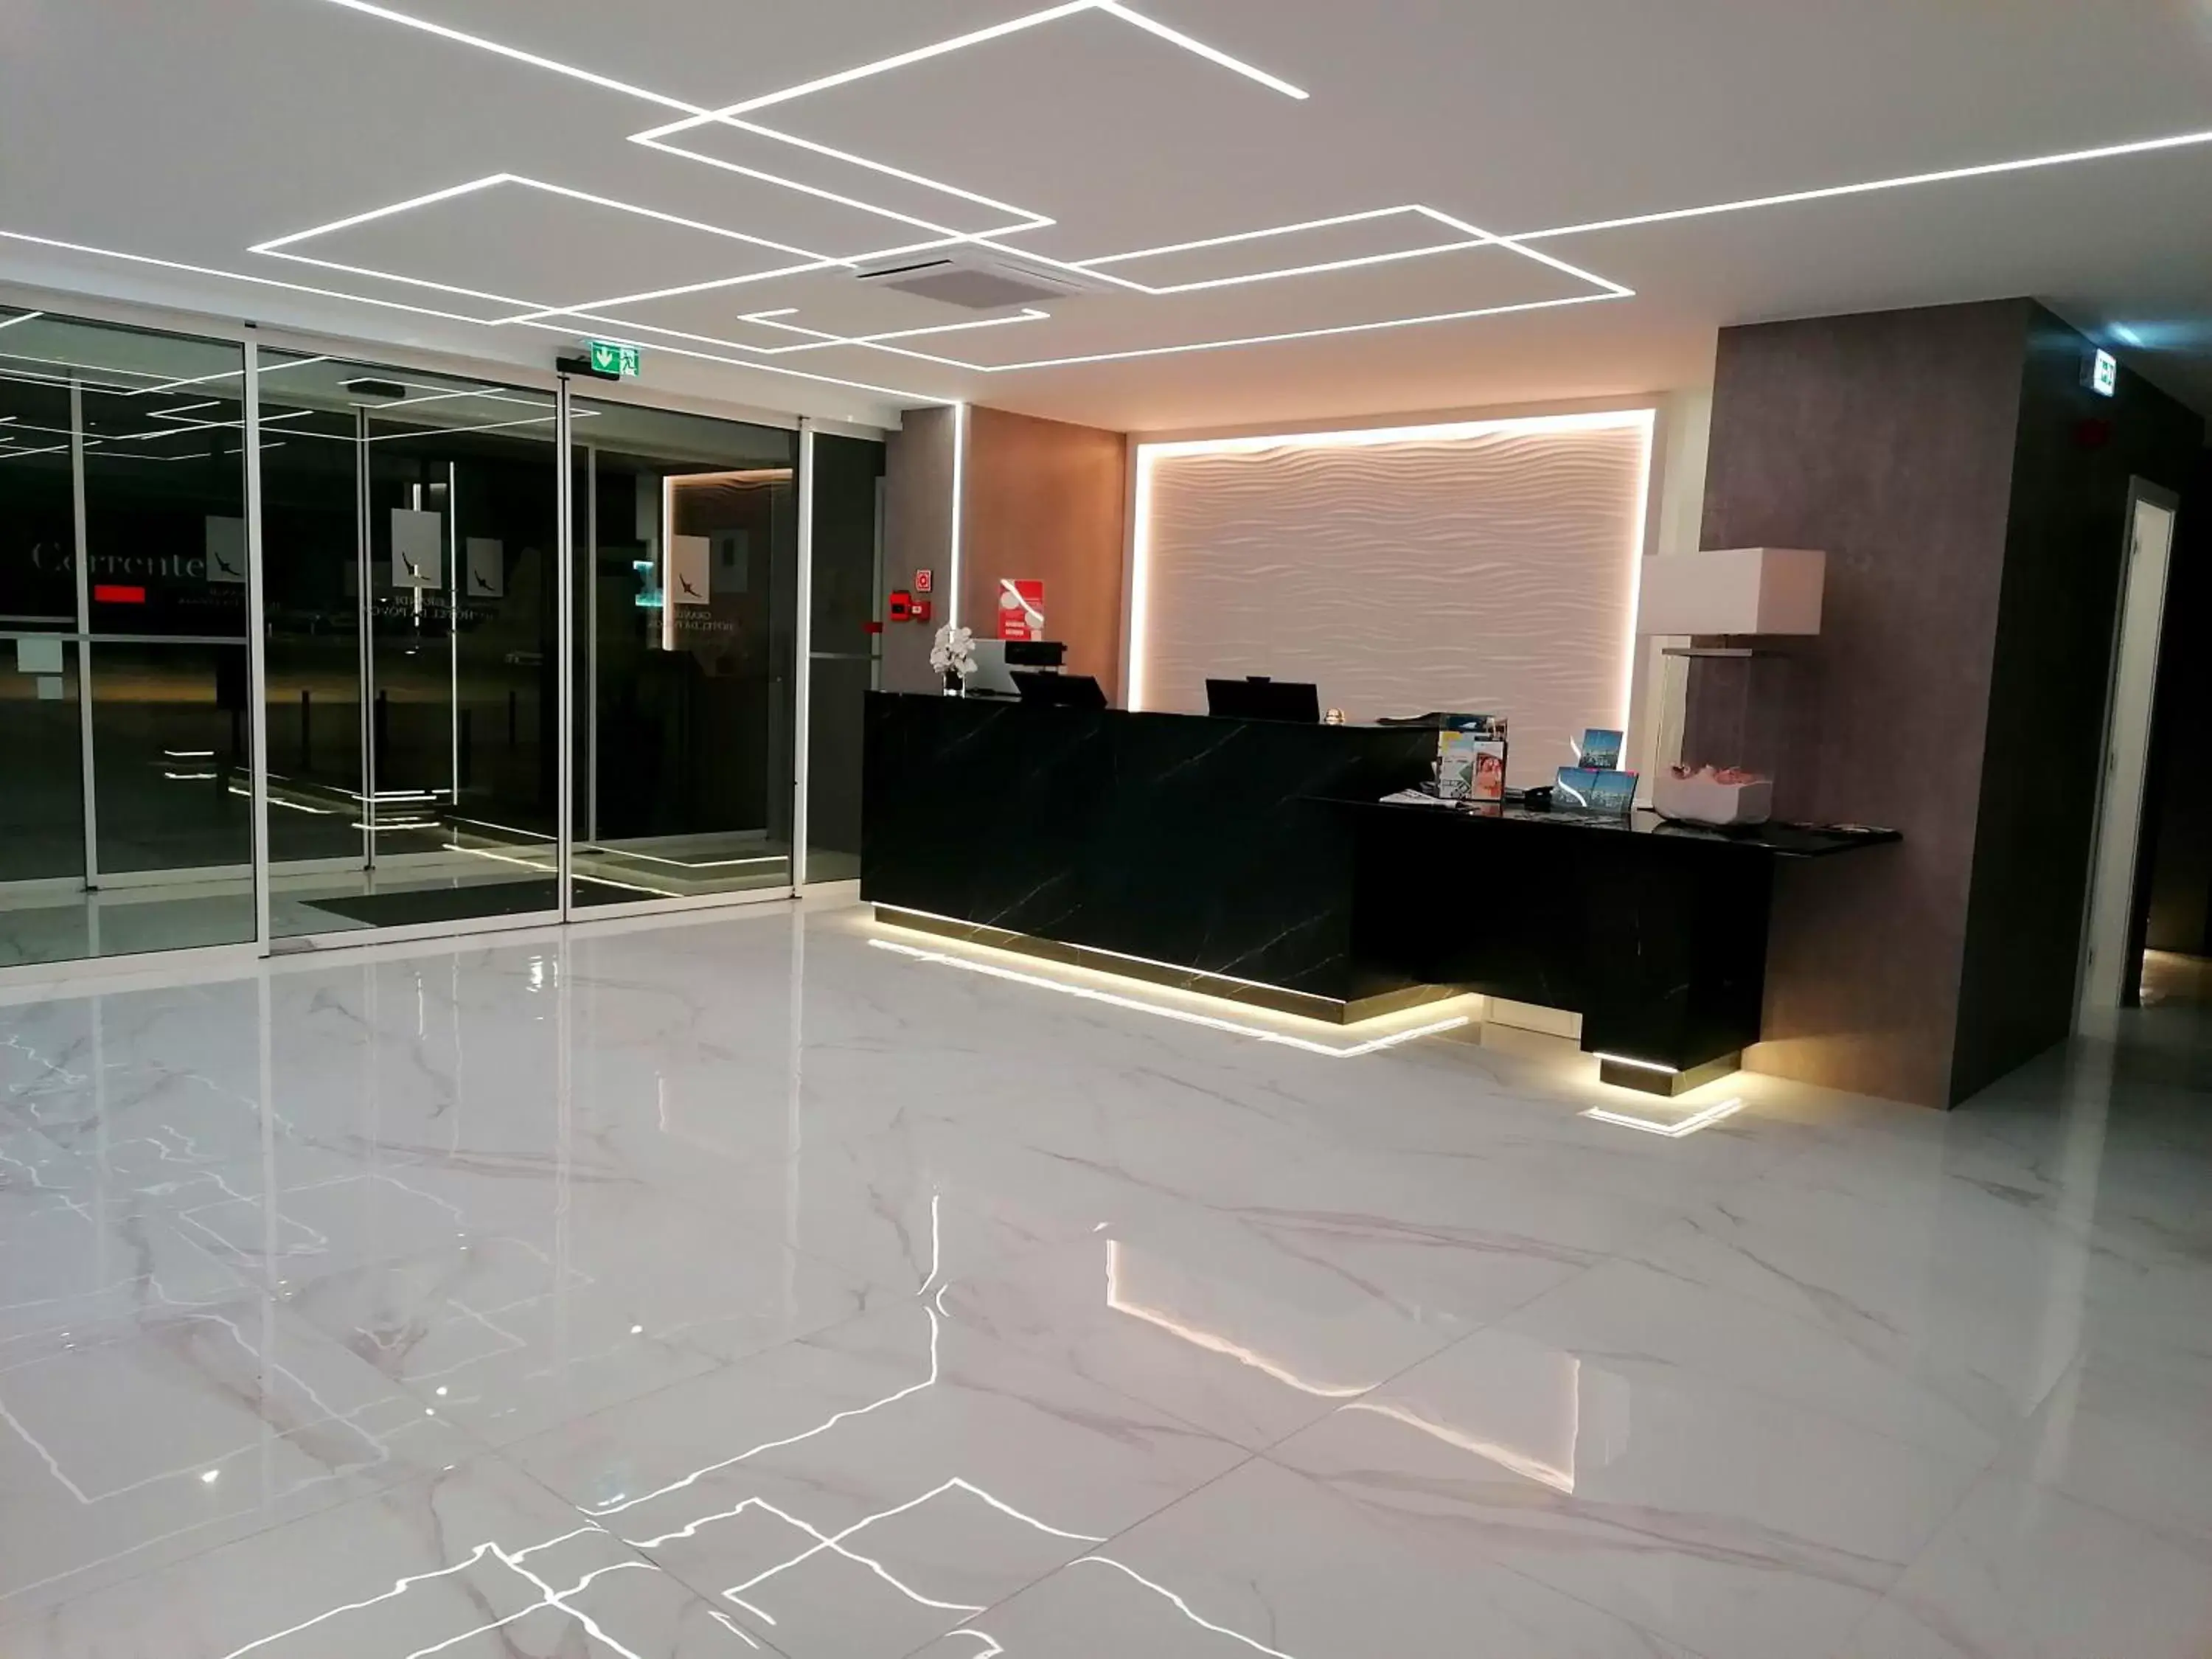 Lobby or reception, Lobby/Reception in Grande Hotel da Povoa